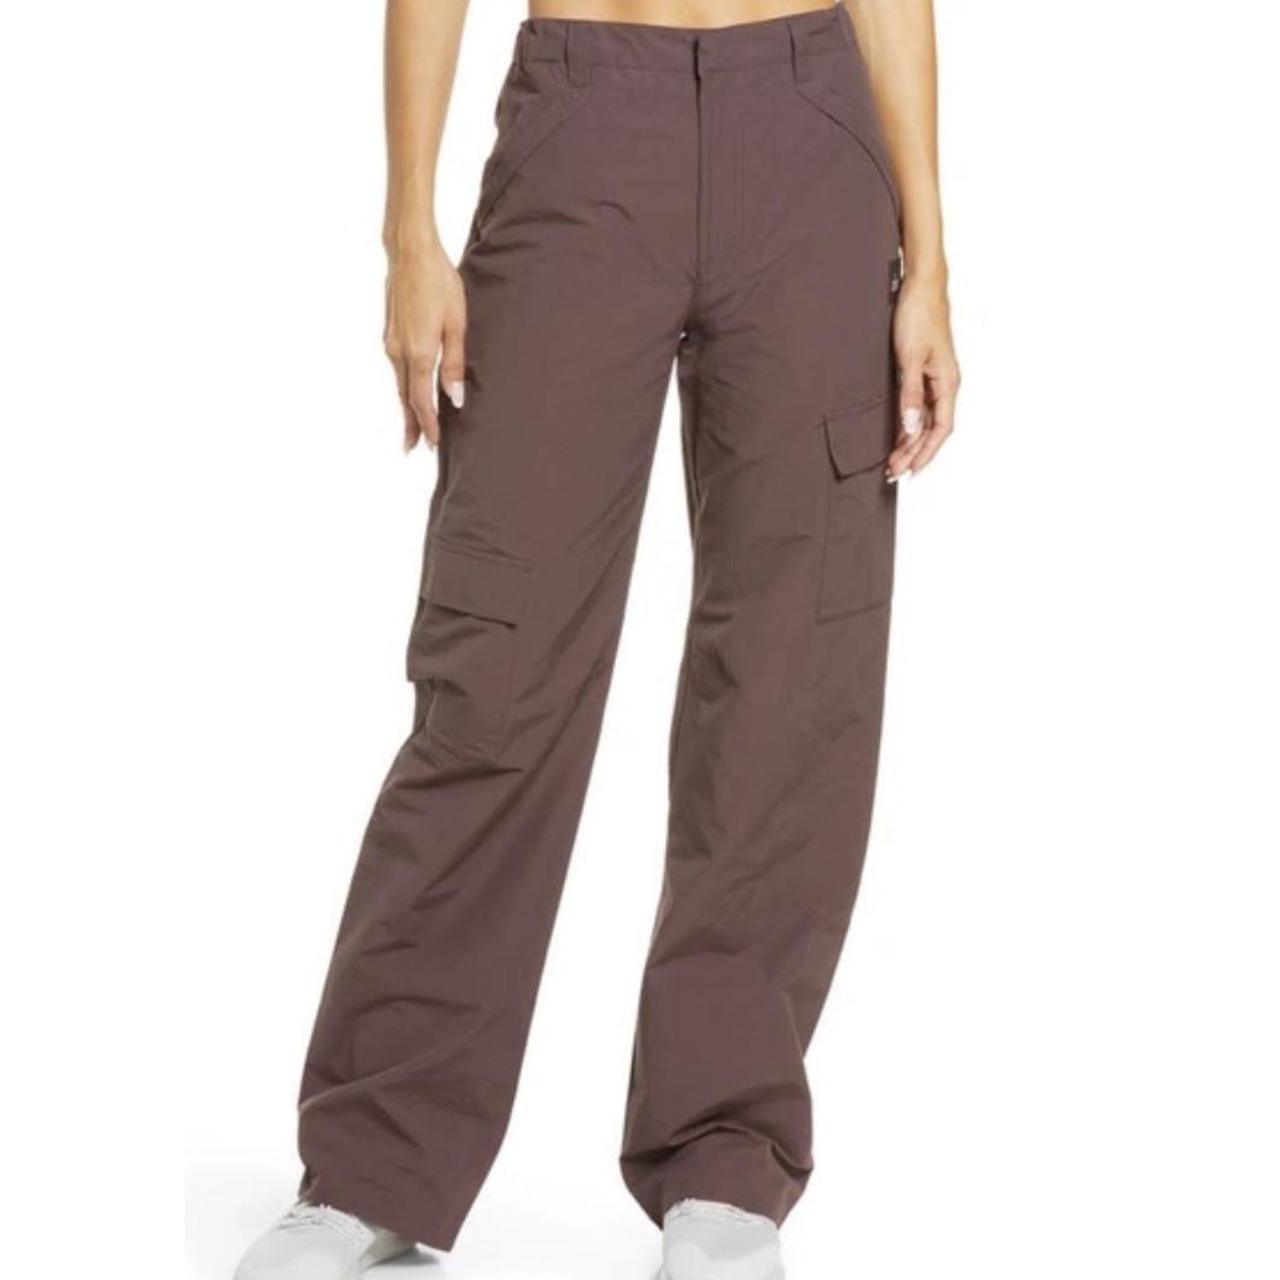 Alo Yoga Women's Purple Trousers (4)